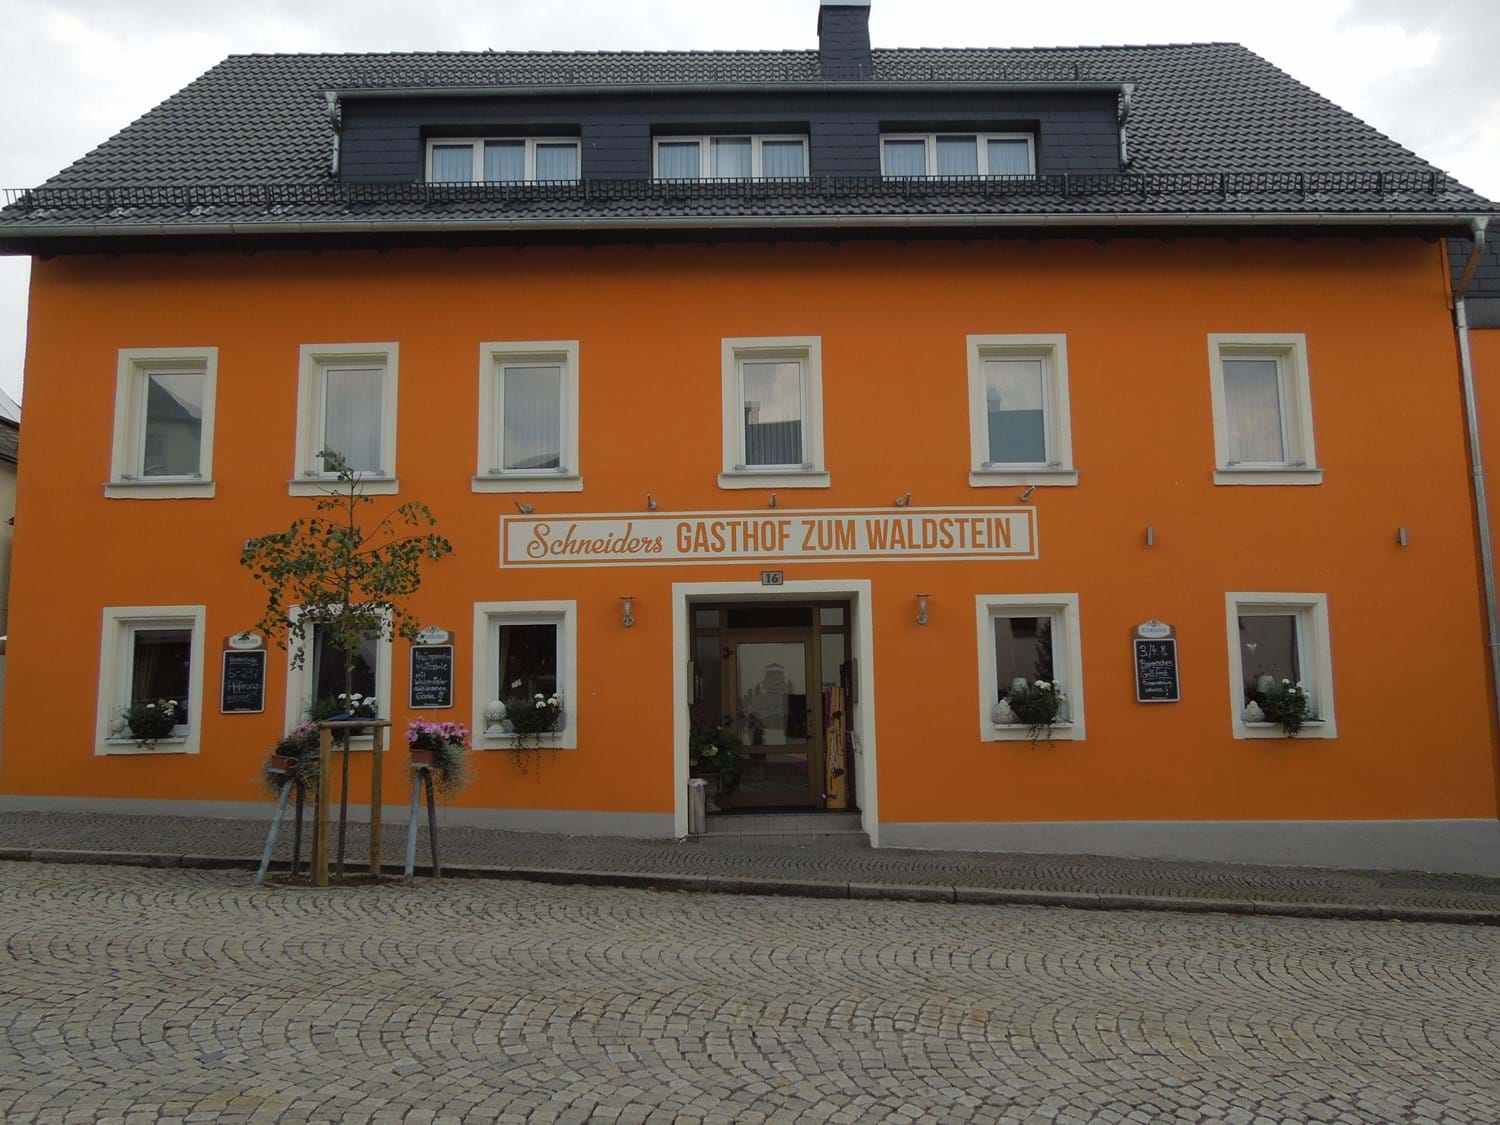 Schneider's Gasthof zum Waldstein